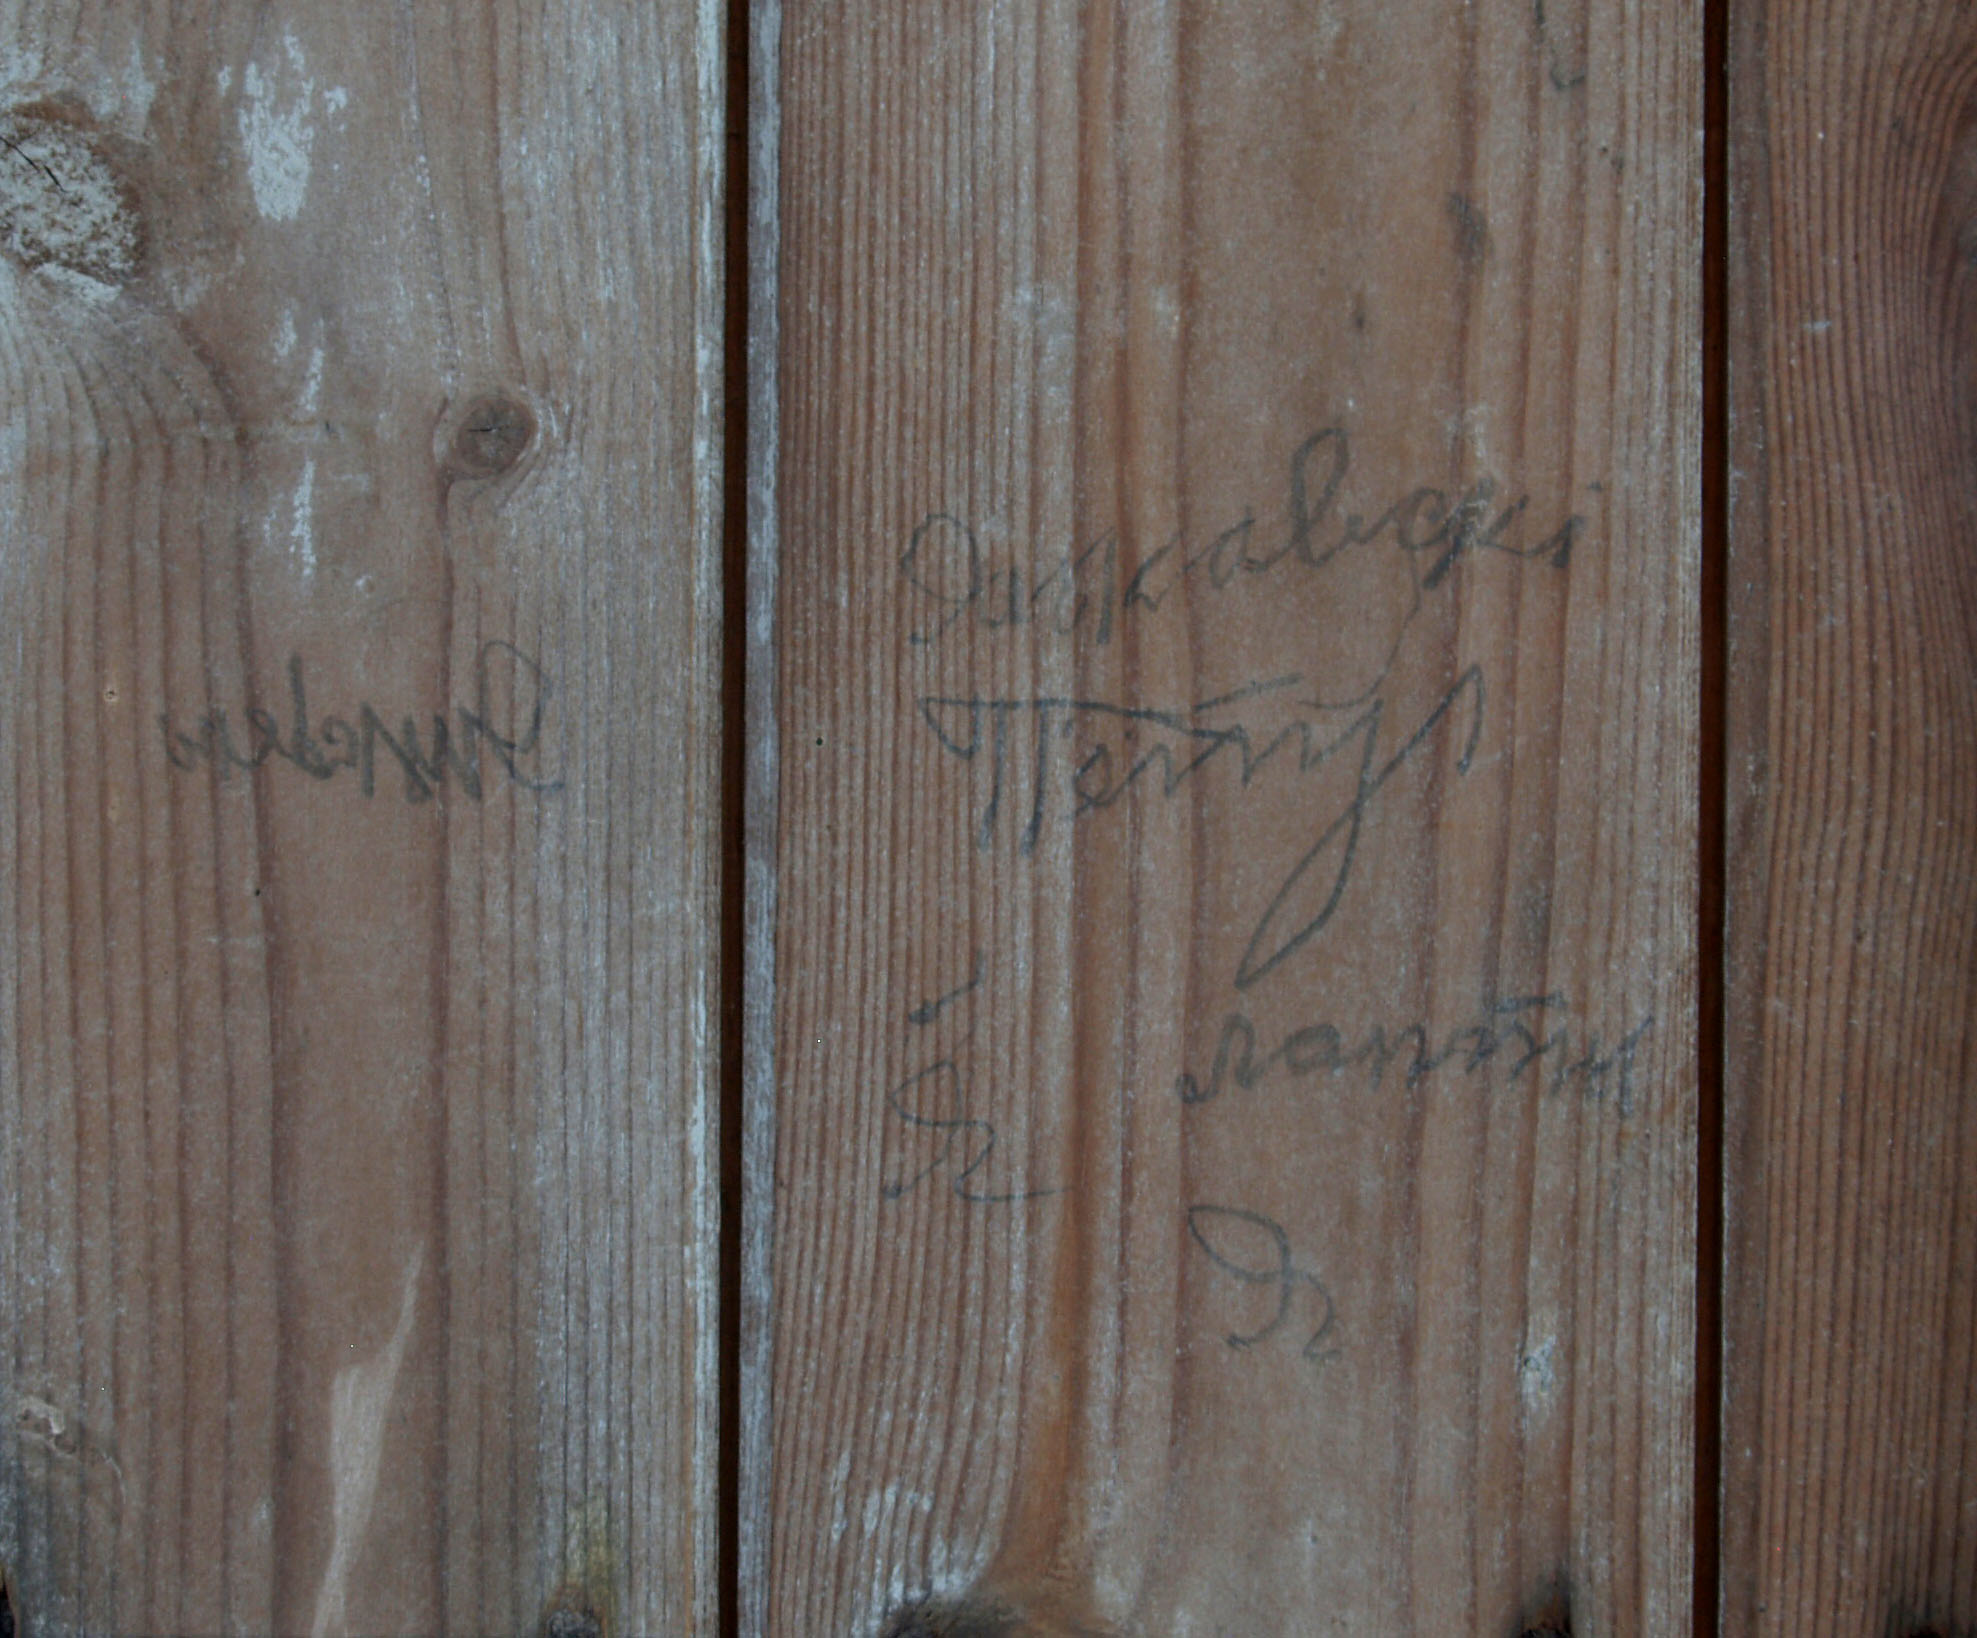 Eine weitere Inschrift im Innerern der Baracke